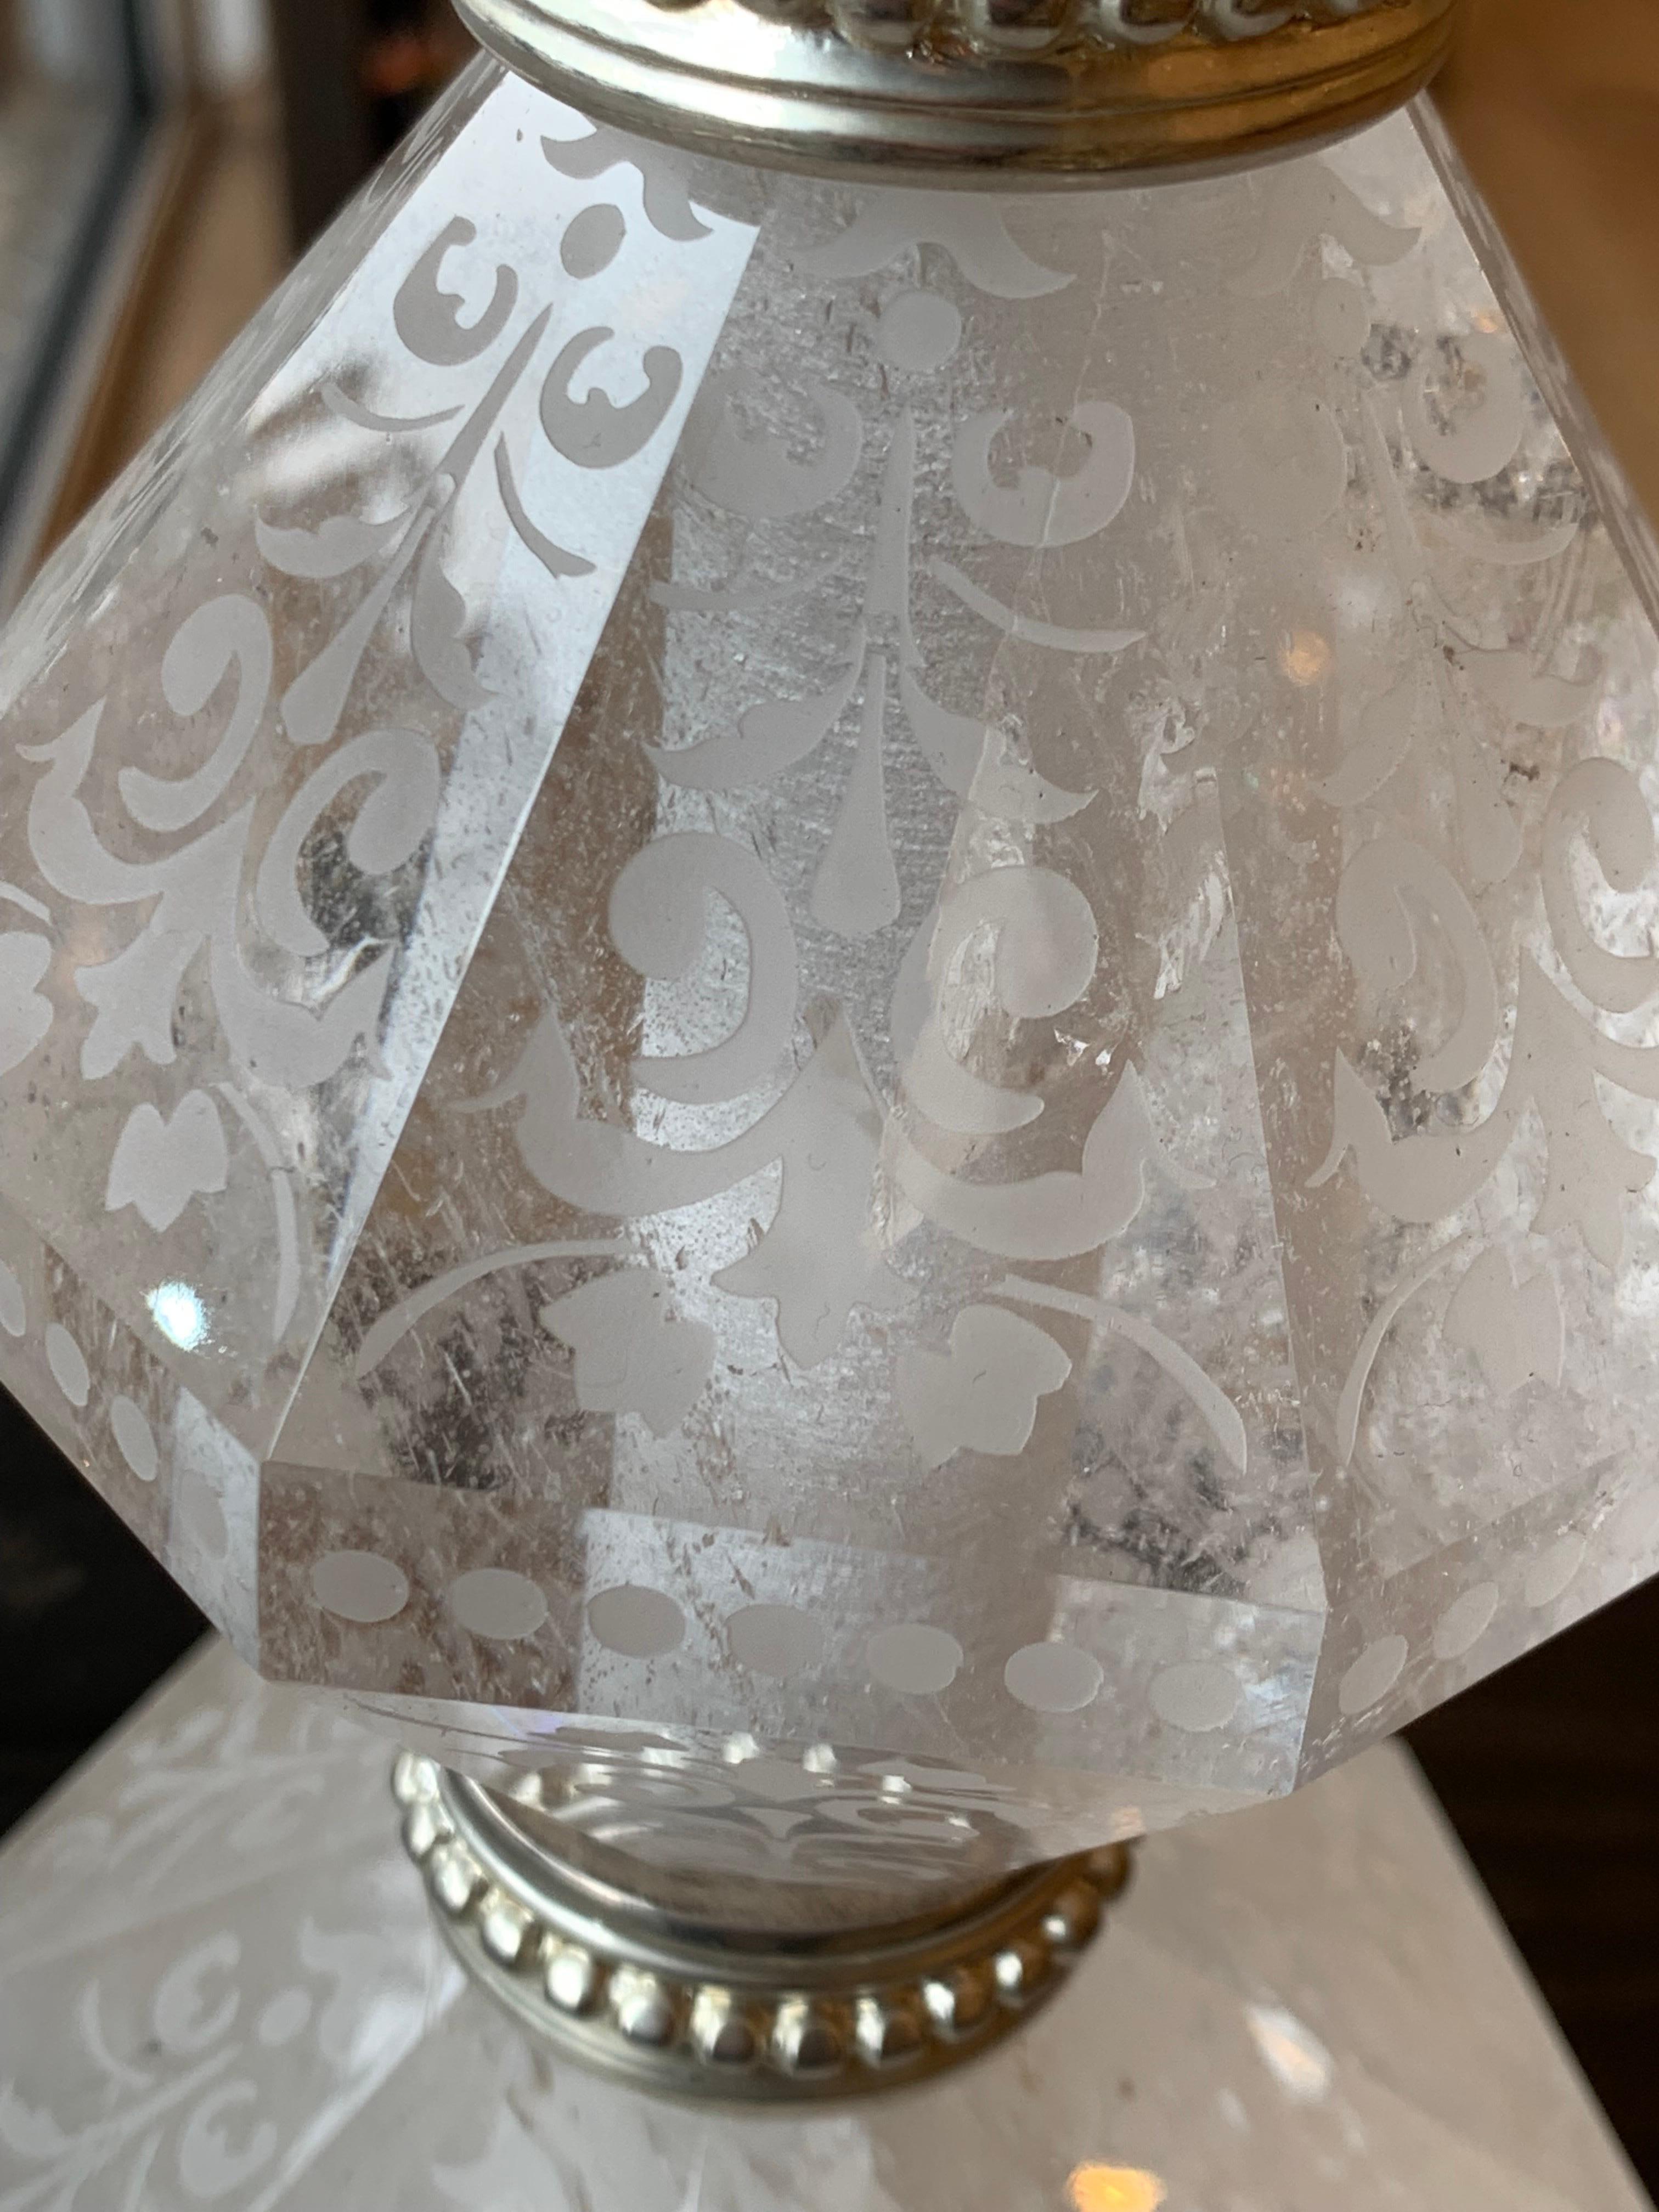 Diese majestätische und elegante Lampe aus Silberbronze und Bergkristall ist eine Kreation aus unserer Werkstatt.
Er besteht aus fünf Teilen aus Bergkristall, die sorgfältig mit geätzten Mustern verziert sind. Die Bronzeteile sind fein verziert mit